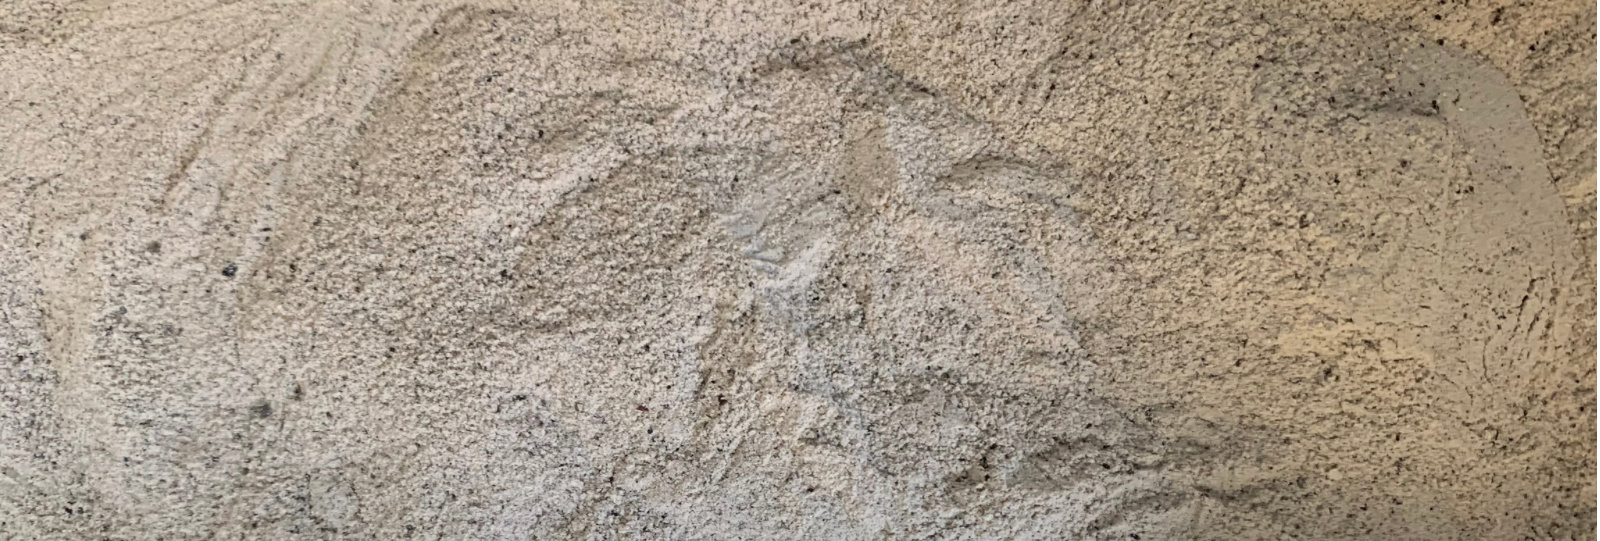 Polvo de piedra pómez